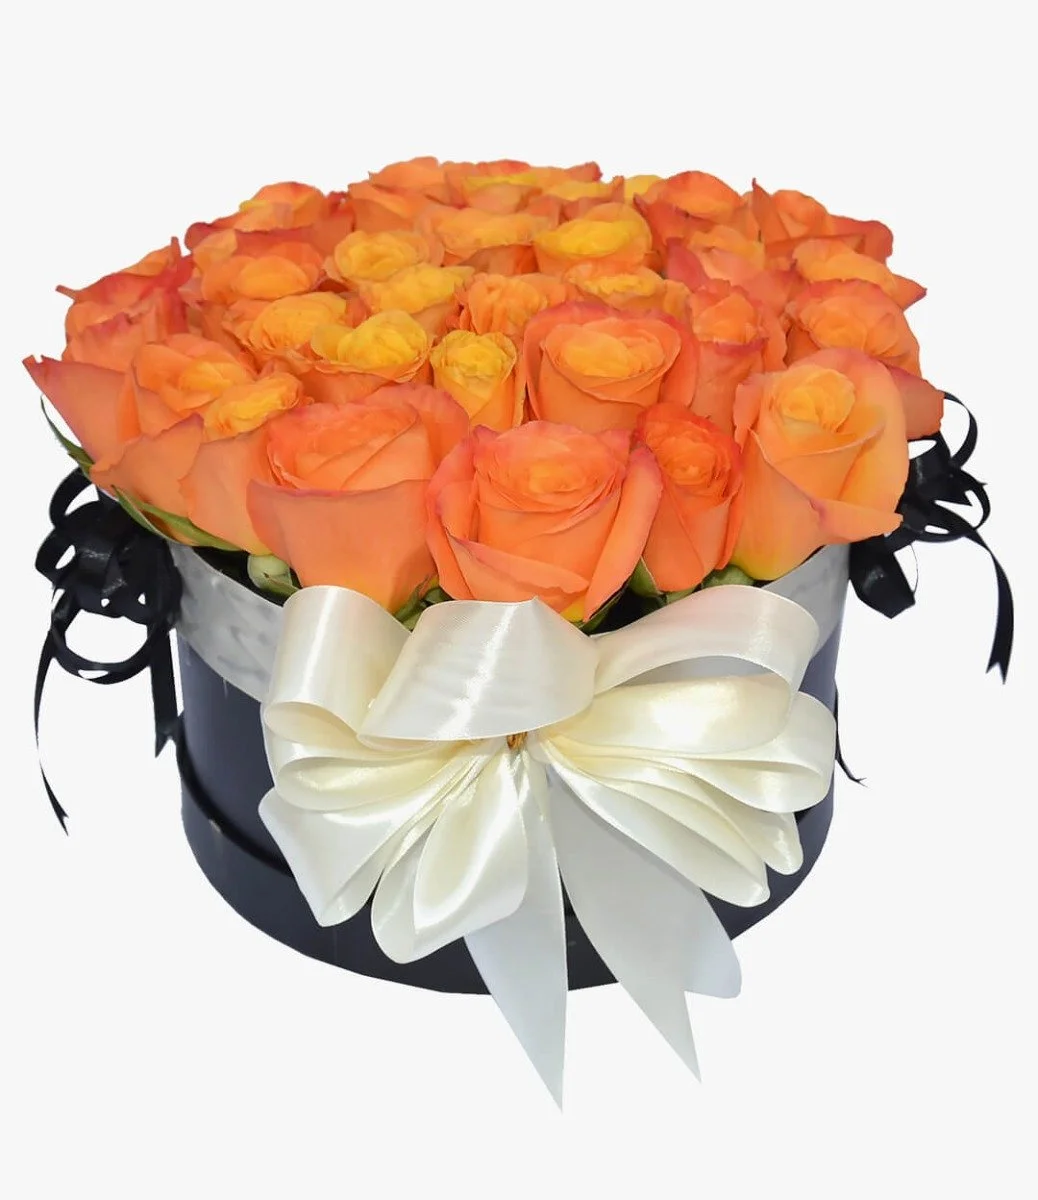 صندوق زهور الورد البرتقالي